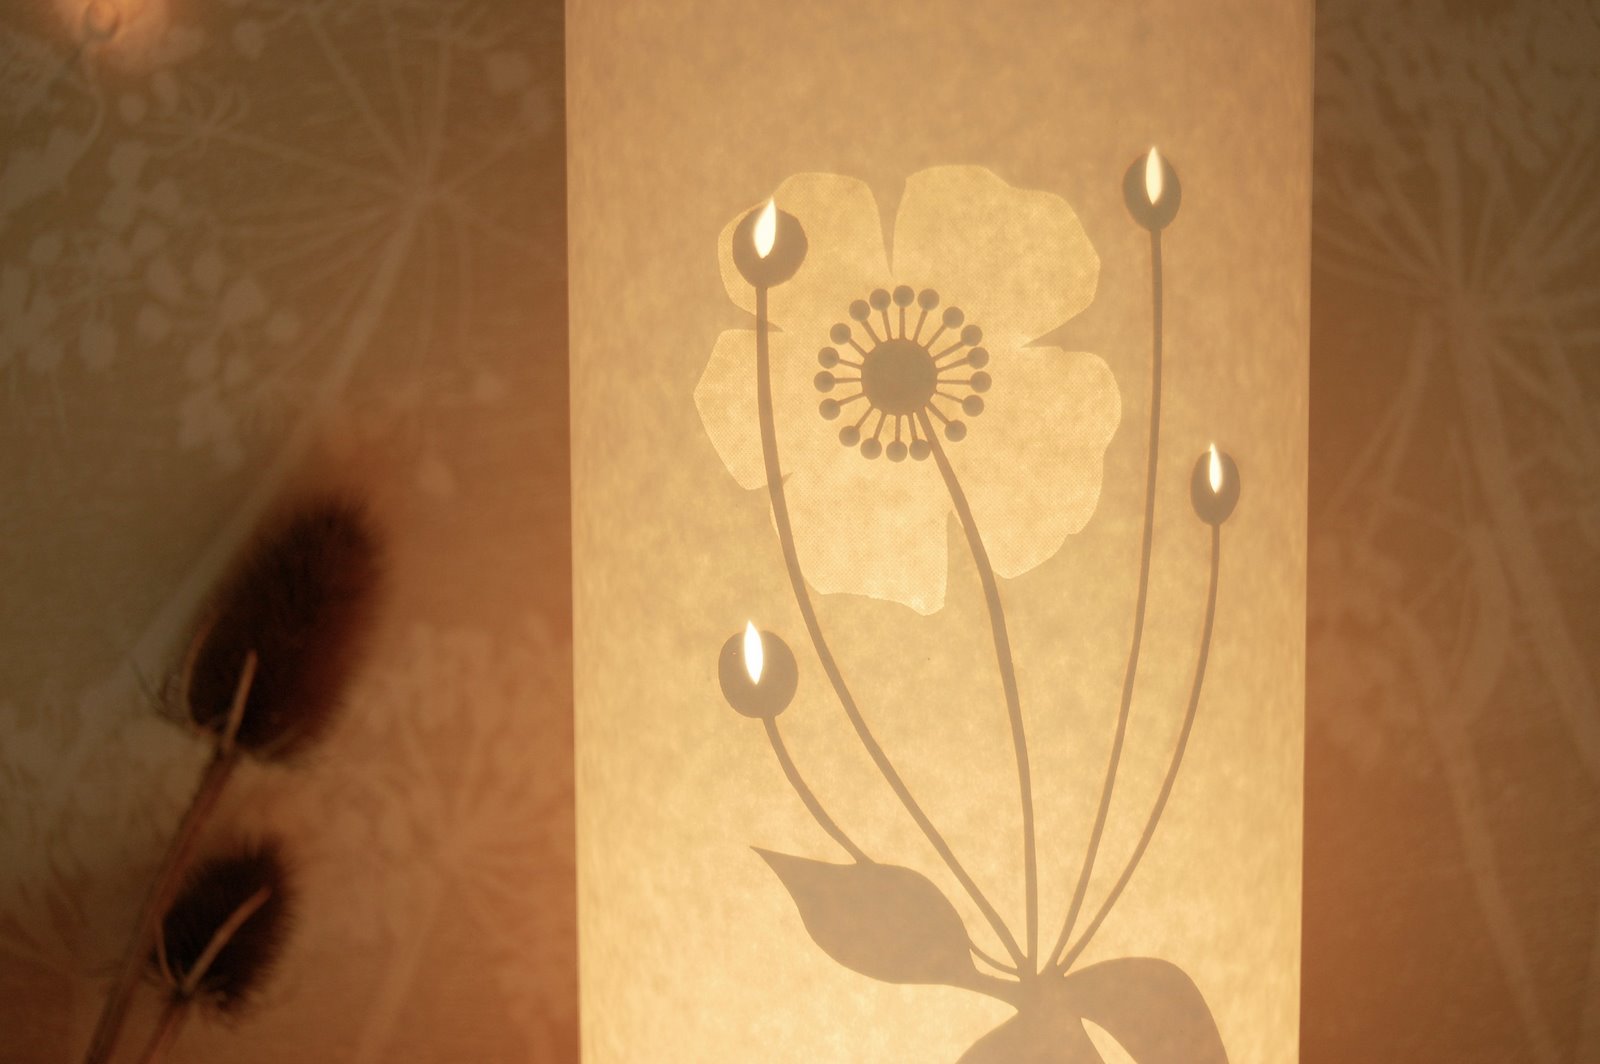 [anemone_closeup.jpg]